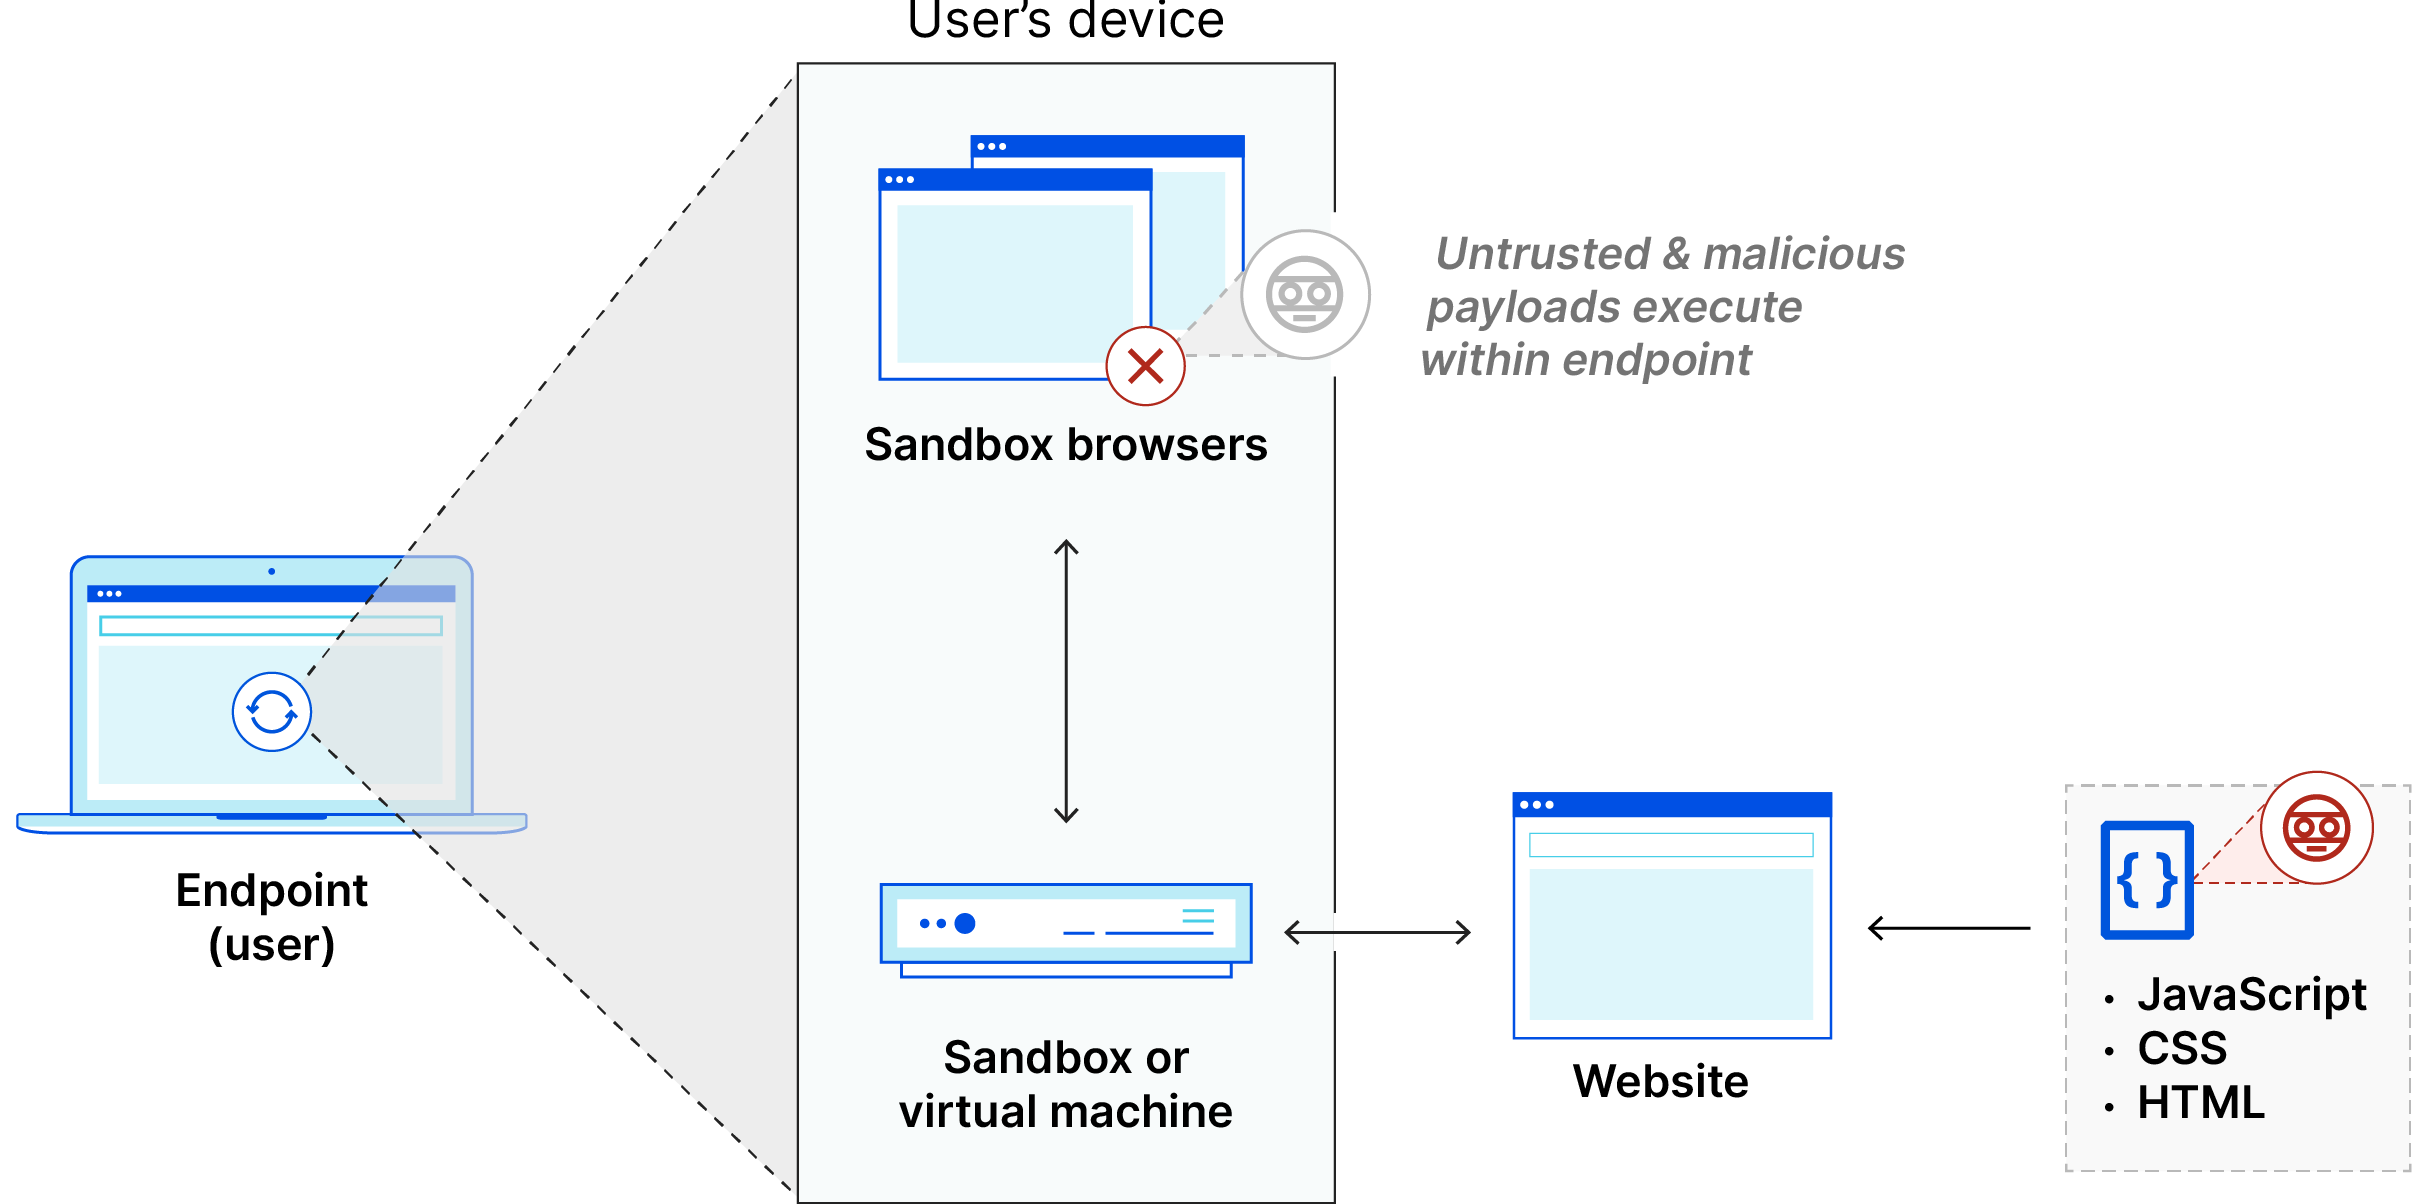 客户端浏览器隔离：网站代码在端点设备内的沙盒中执行